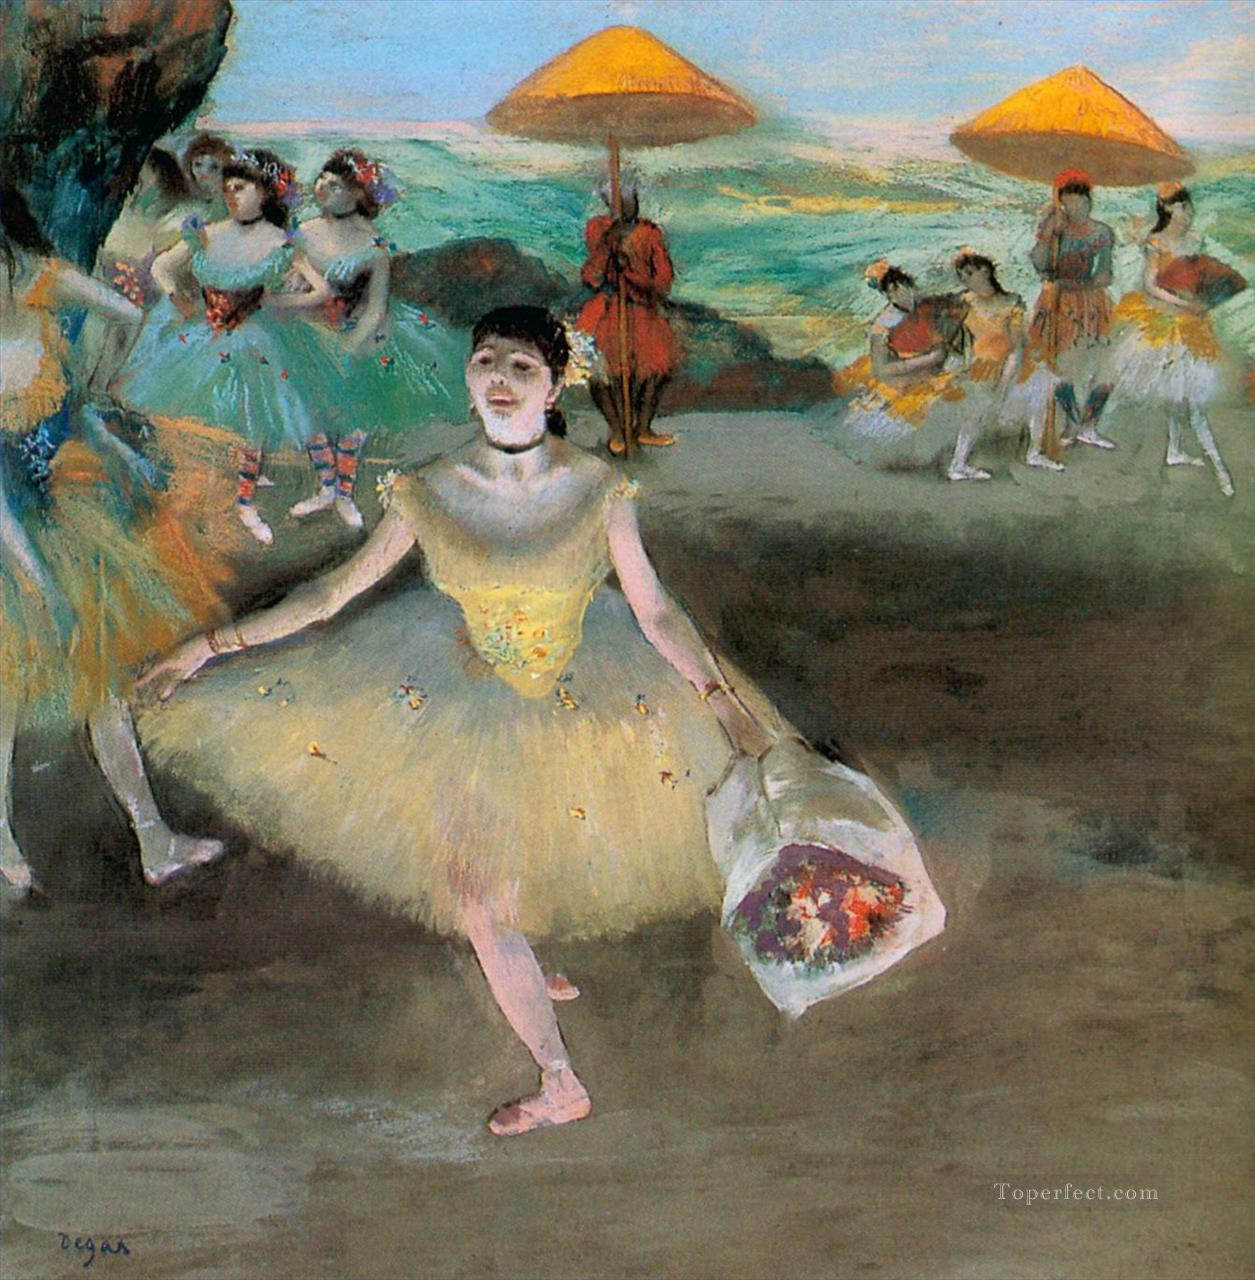 お辞儀をする花束を持つダンサー 1877年 エドガー・ドガ油絵